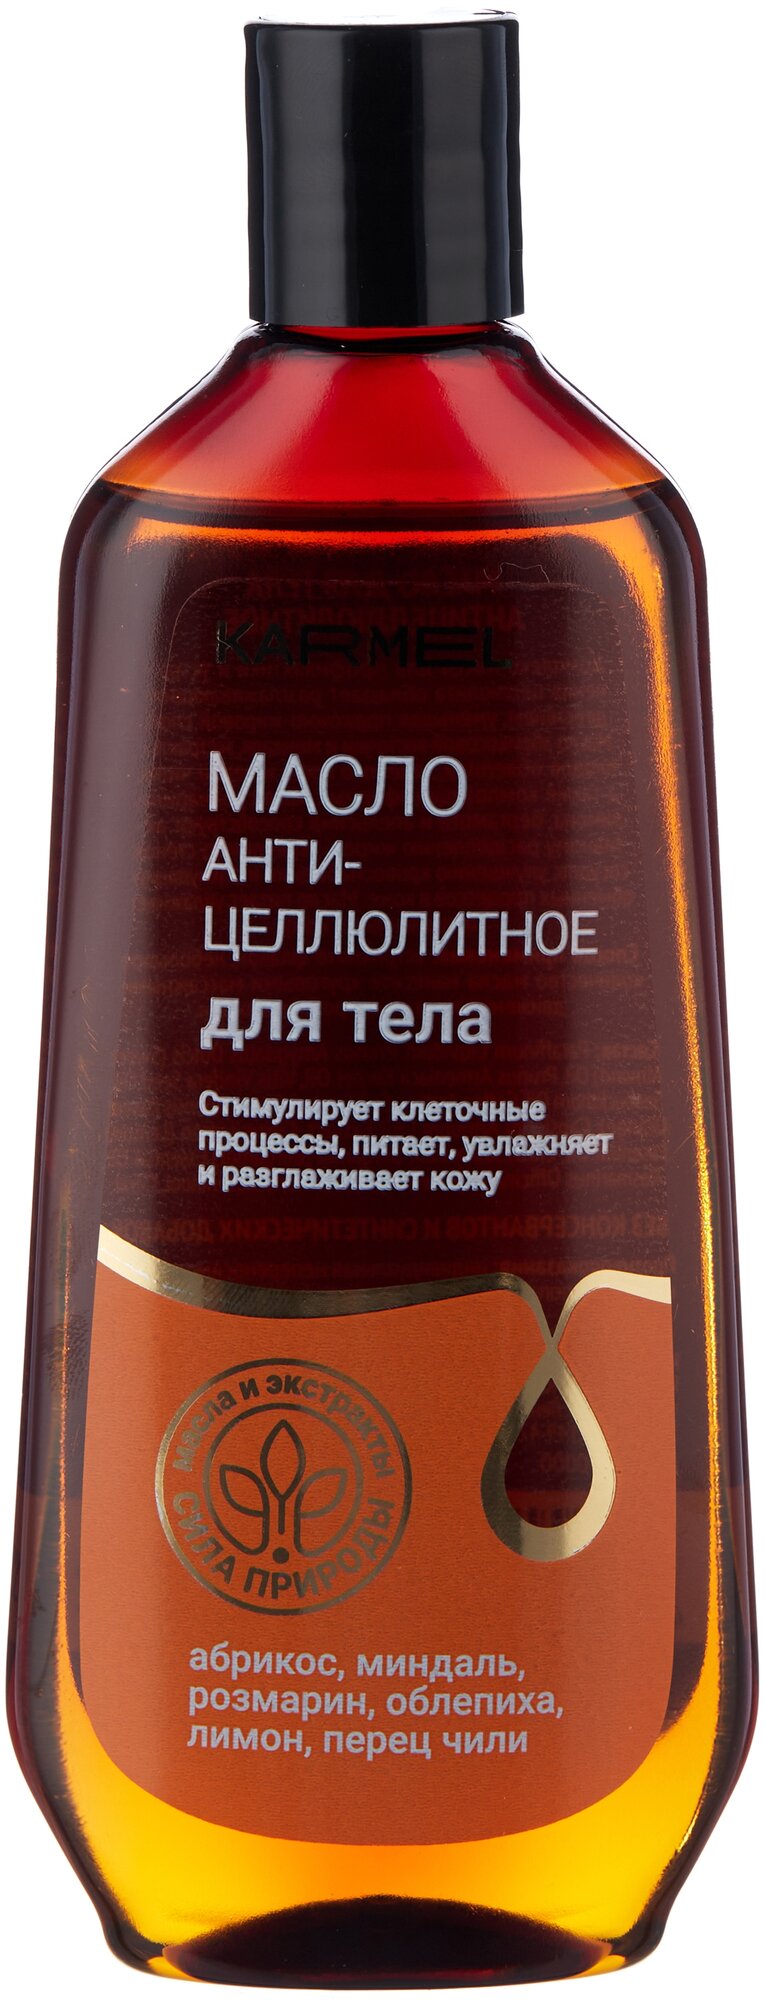 Karmel масло антицеллюлитное для тела